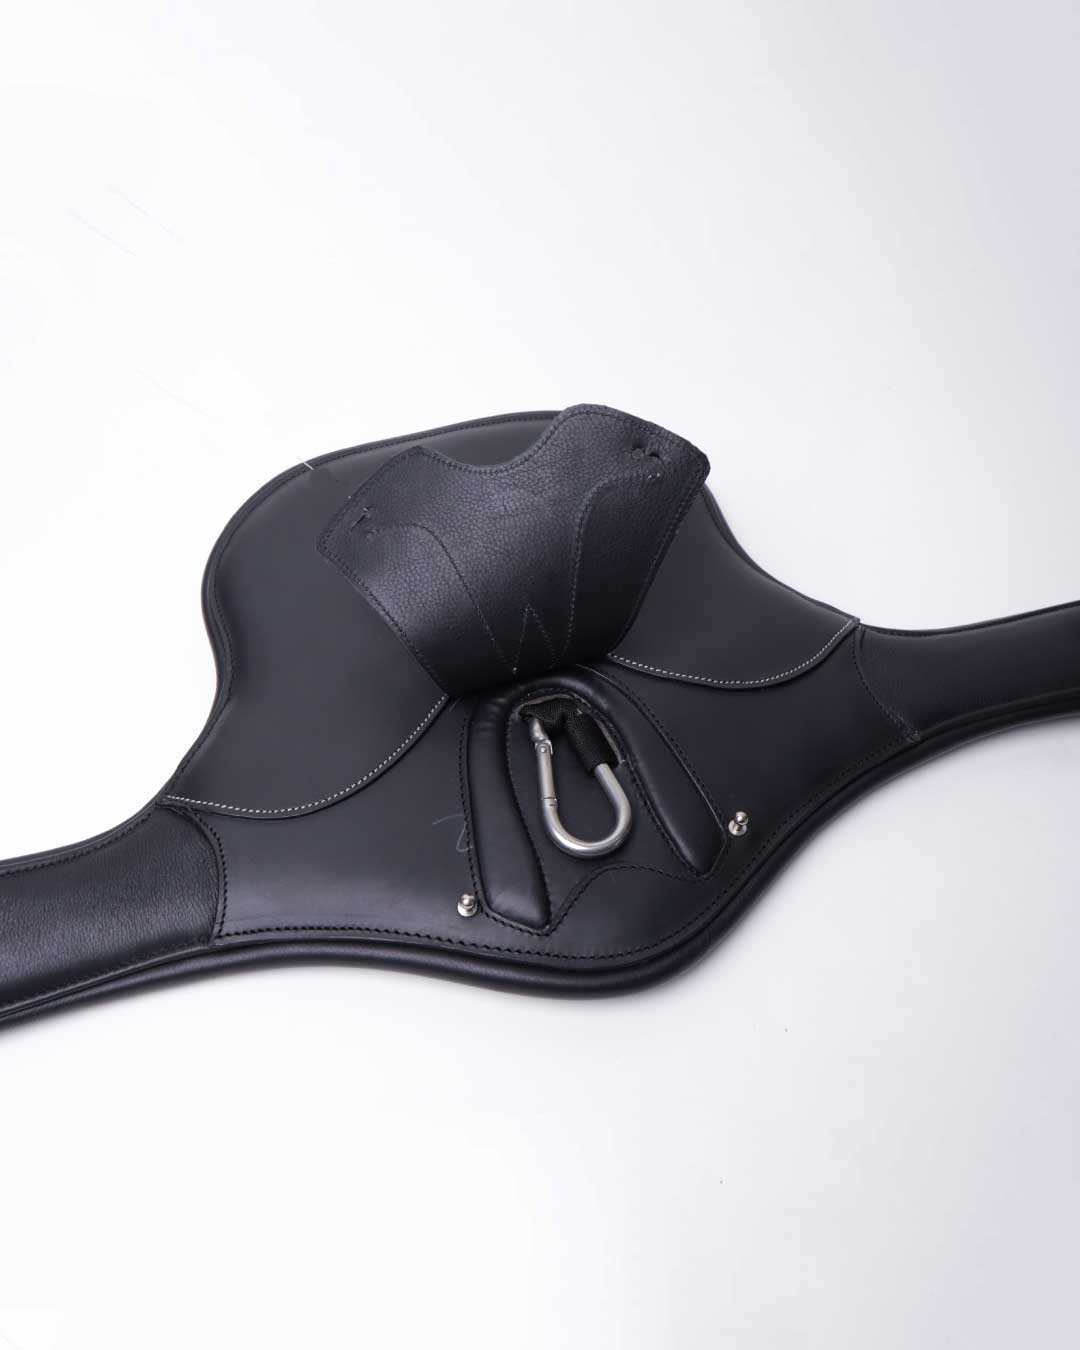 Tajmahal – leather stud girth with carabiner cover panel